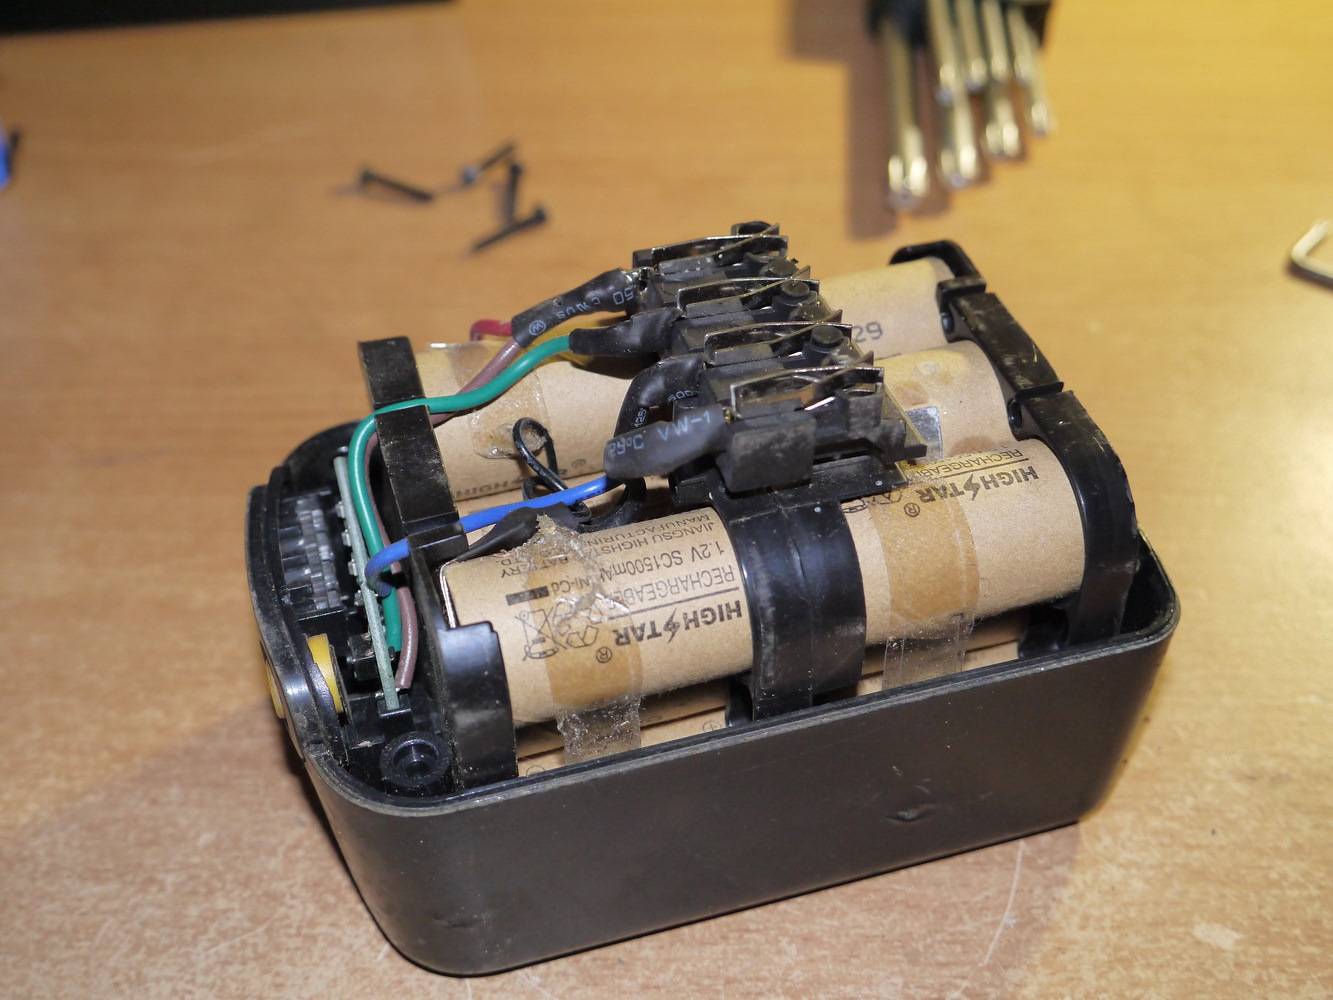 Как заменить аккумулятор в шуруповерте: ремонт акб